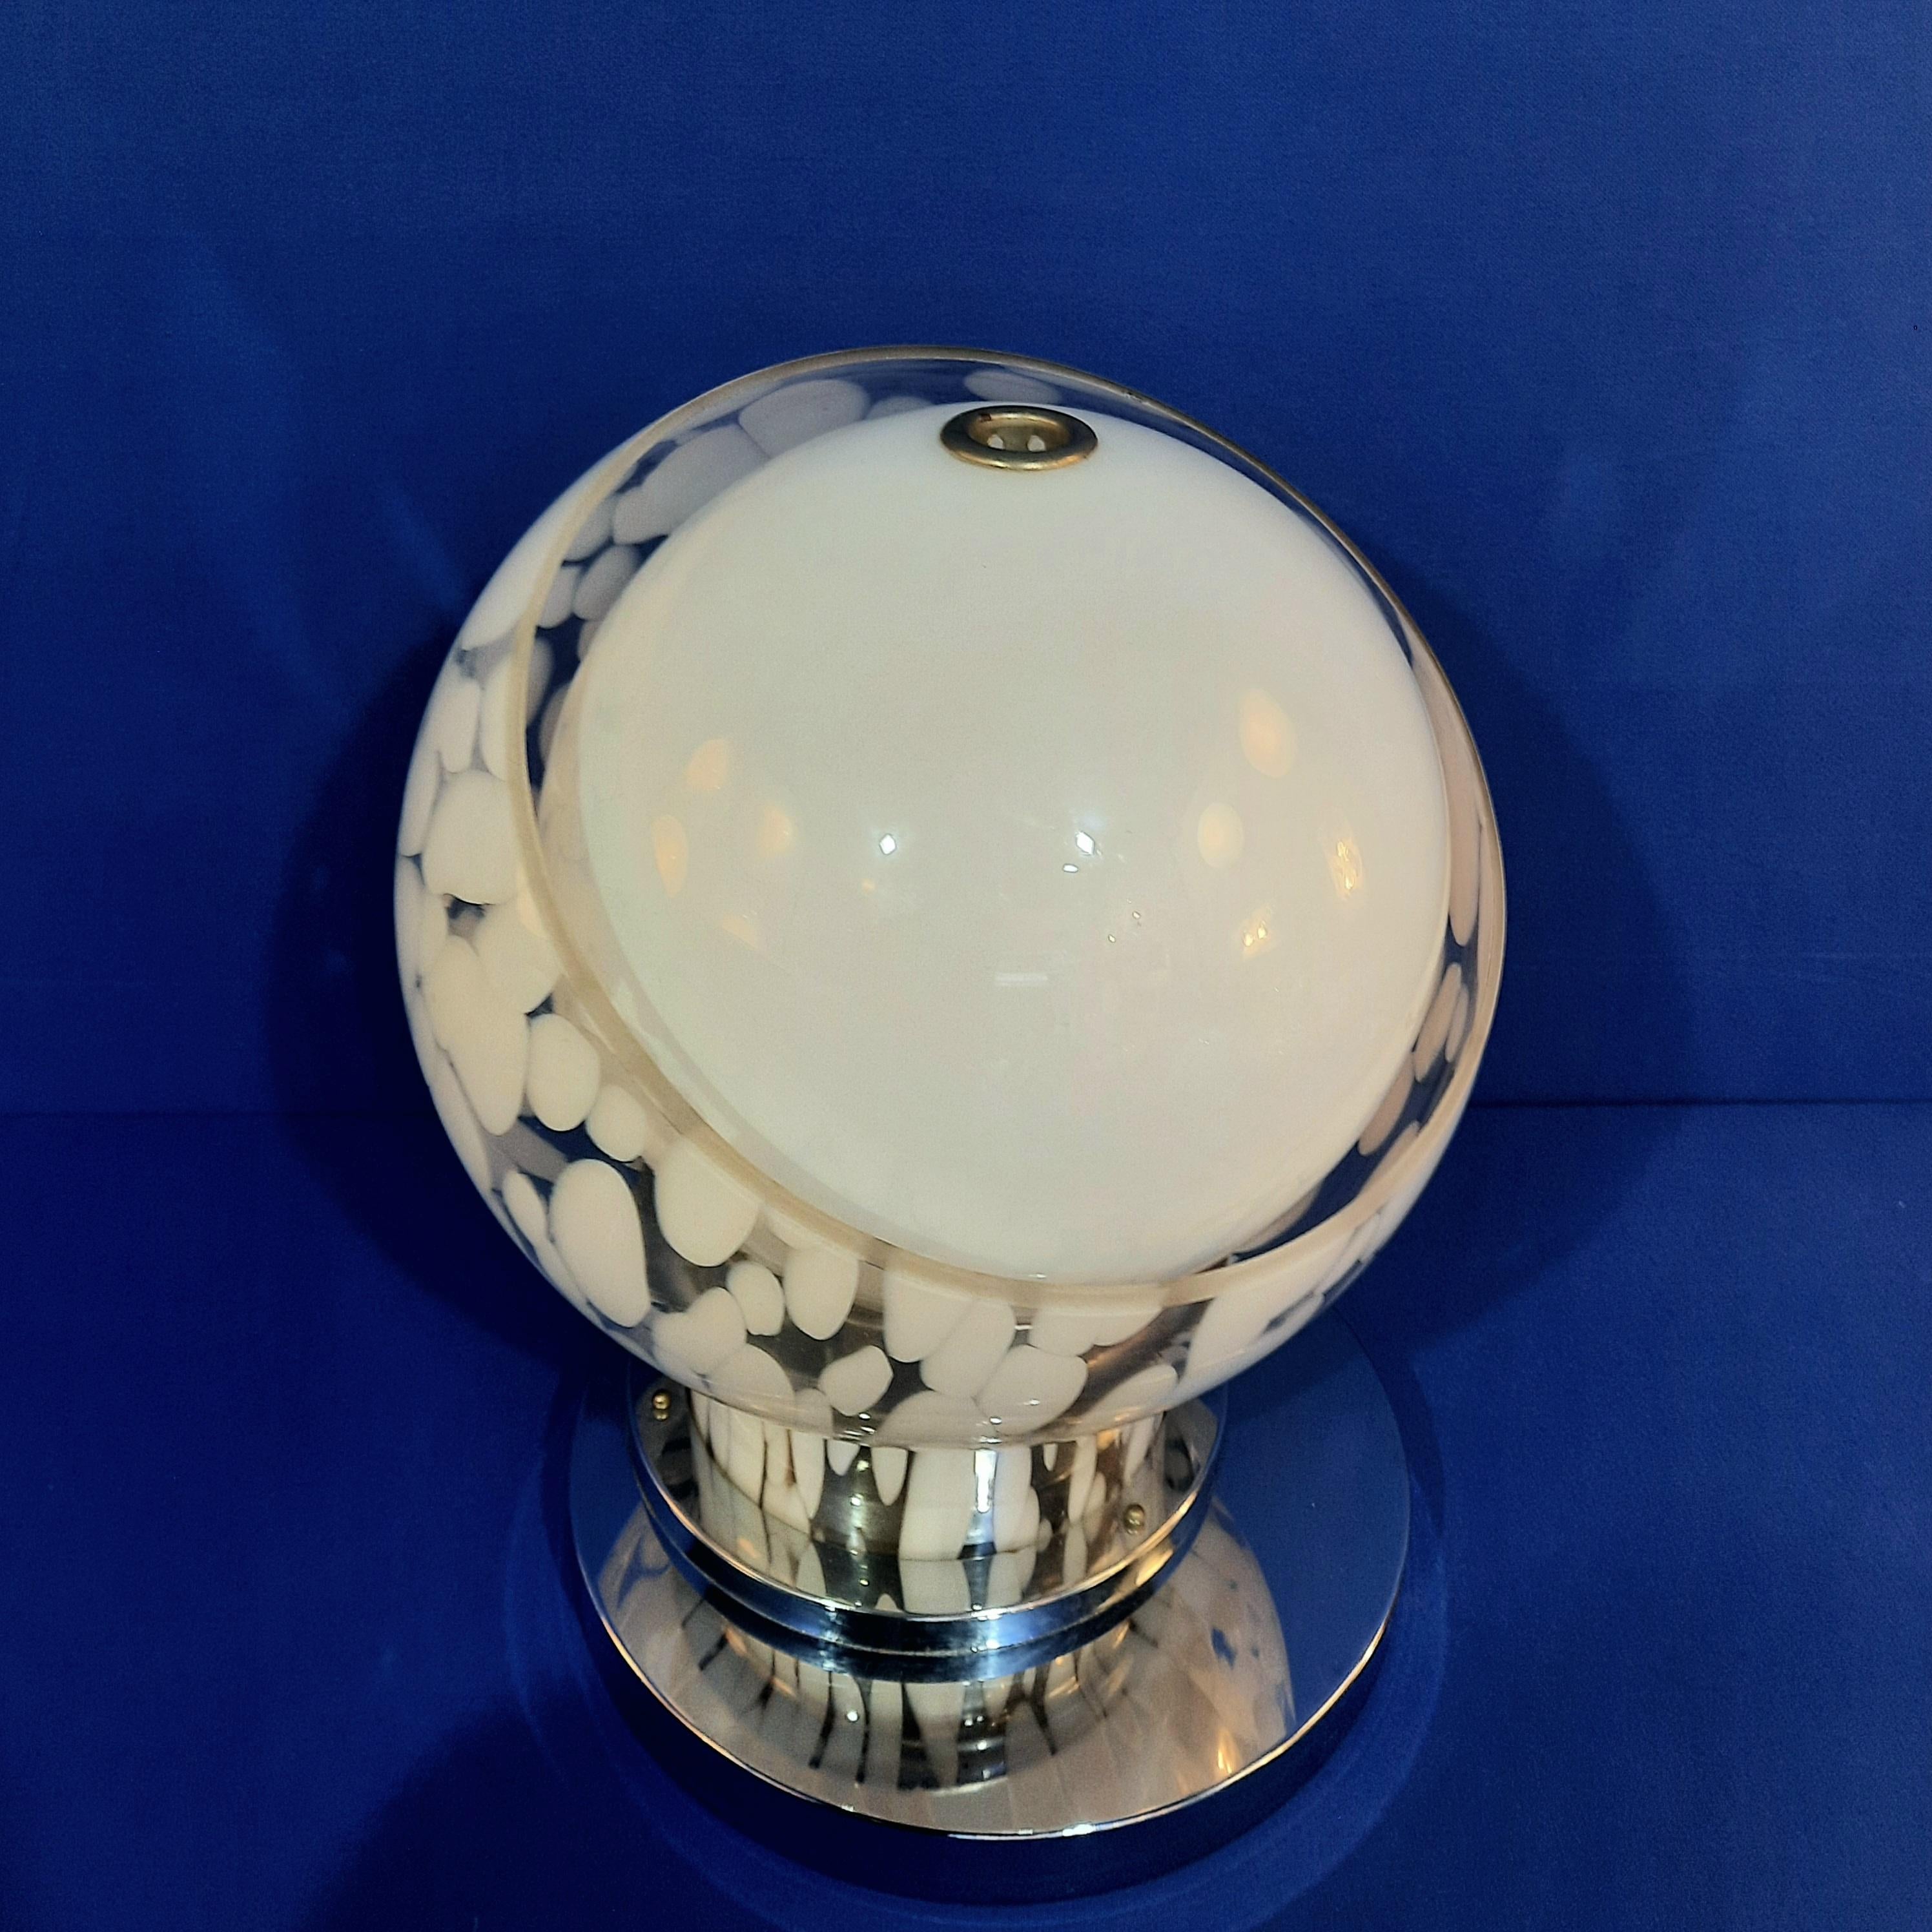 Cette lampe de table iconique a été conçue par Angelo Brotto et éditée par Esperia au début des années 1970.

Il est composé de deux pièces de verre. Le globule blanc opalin est d'abord inséré dans un globule 